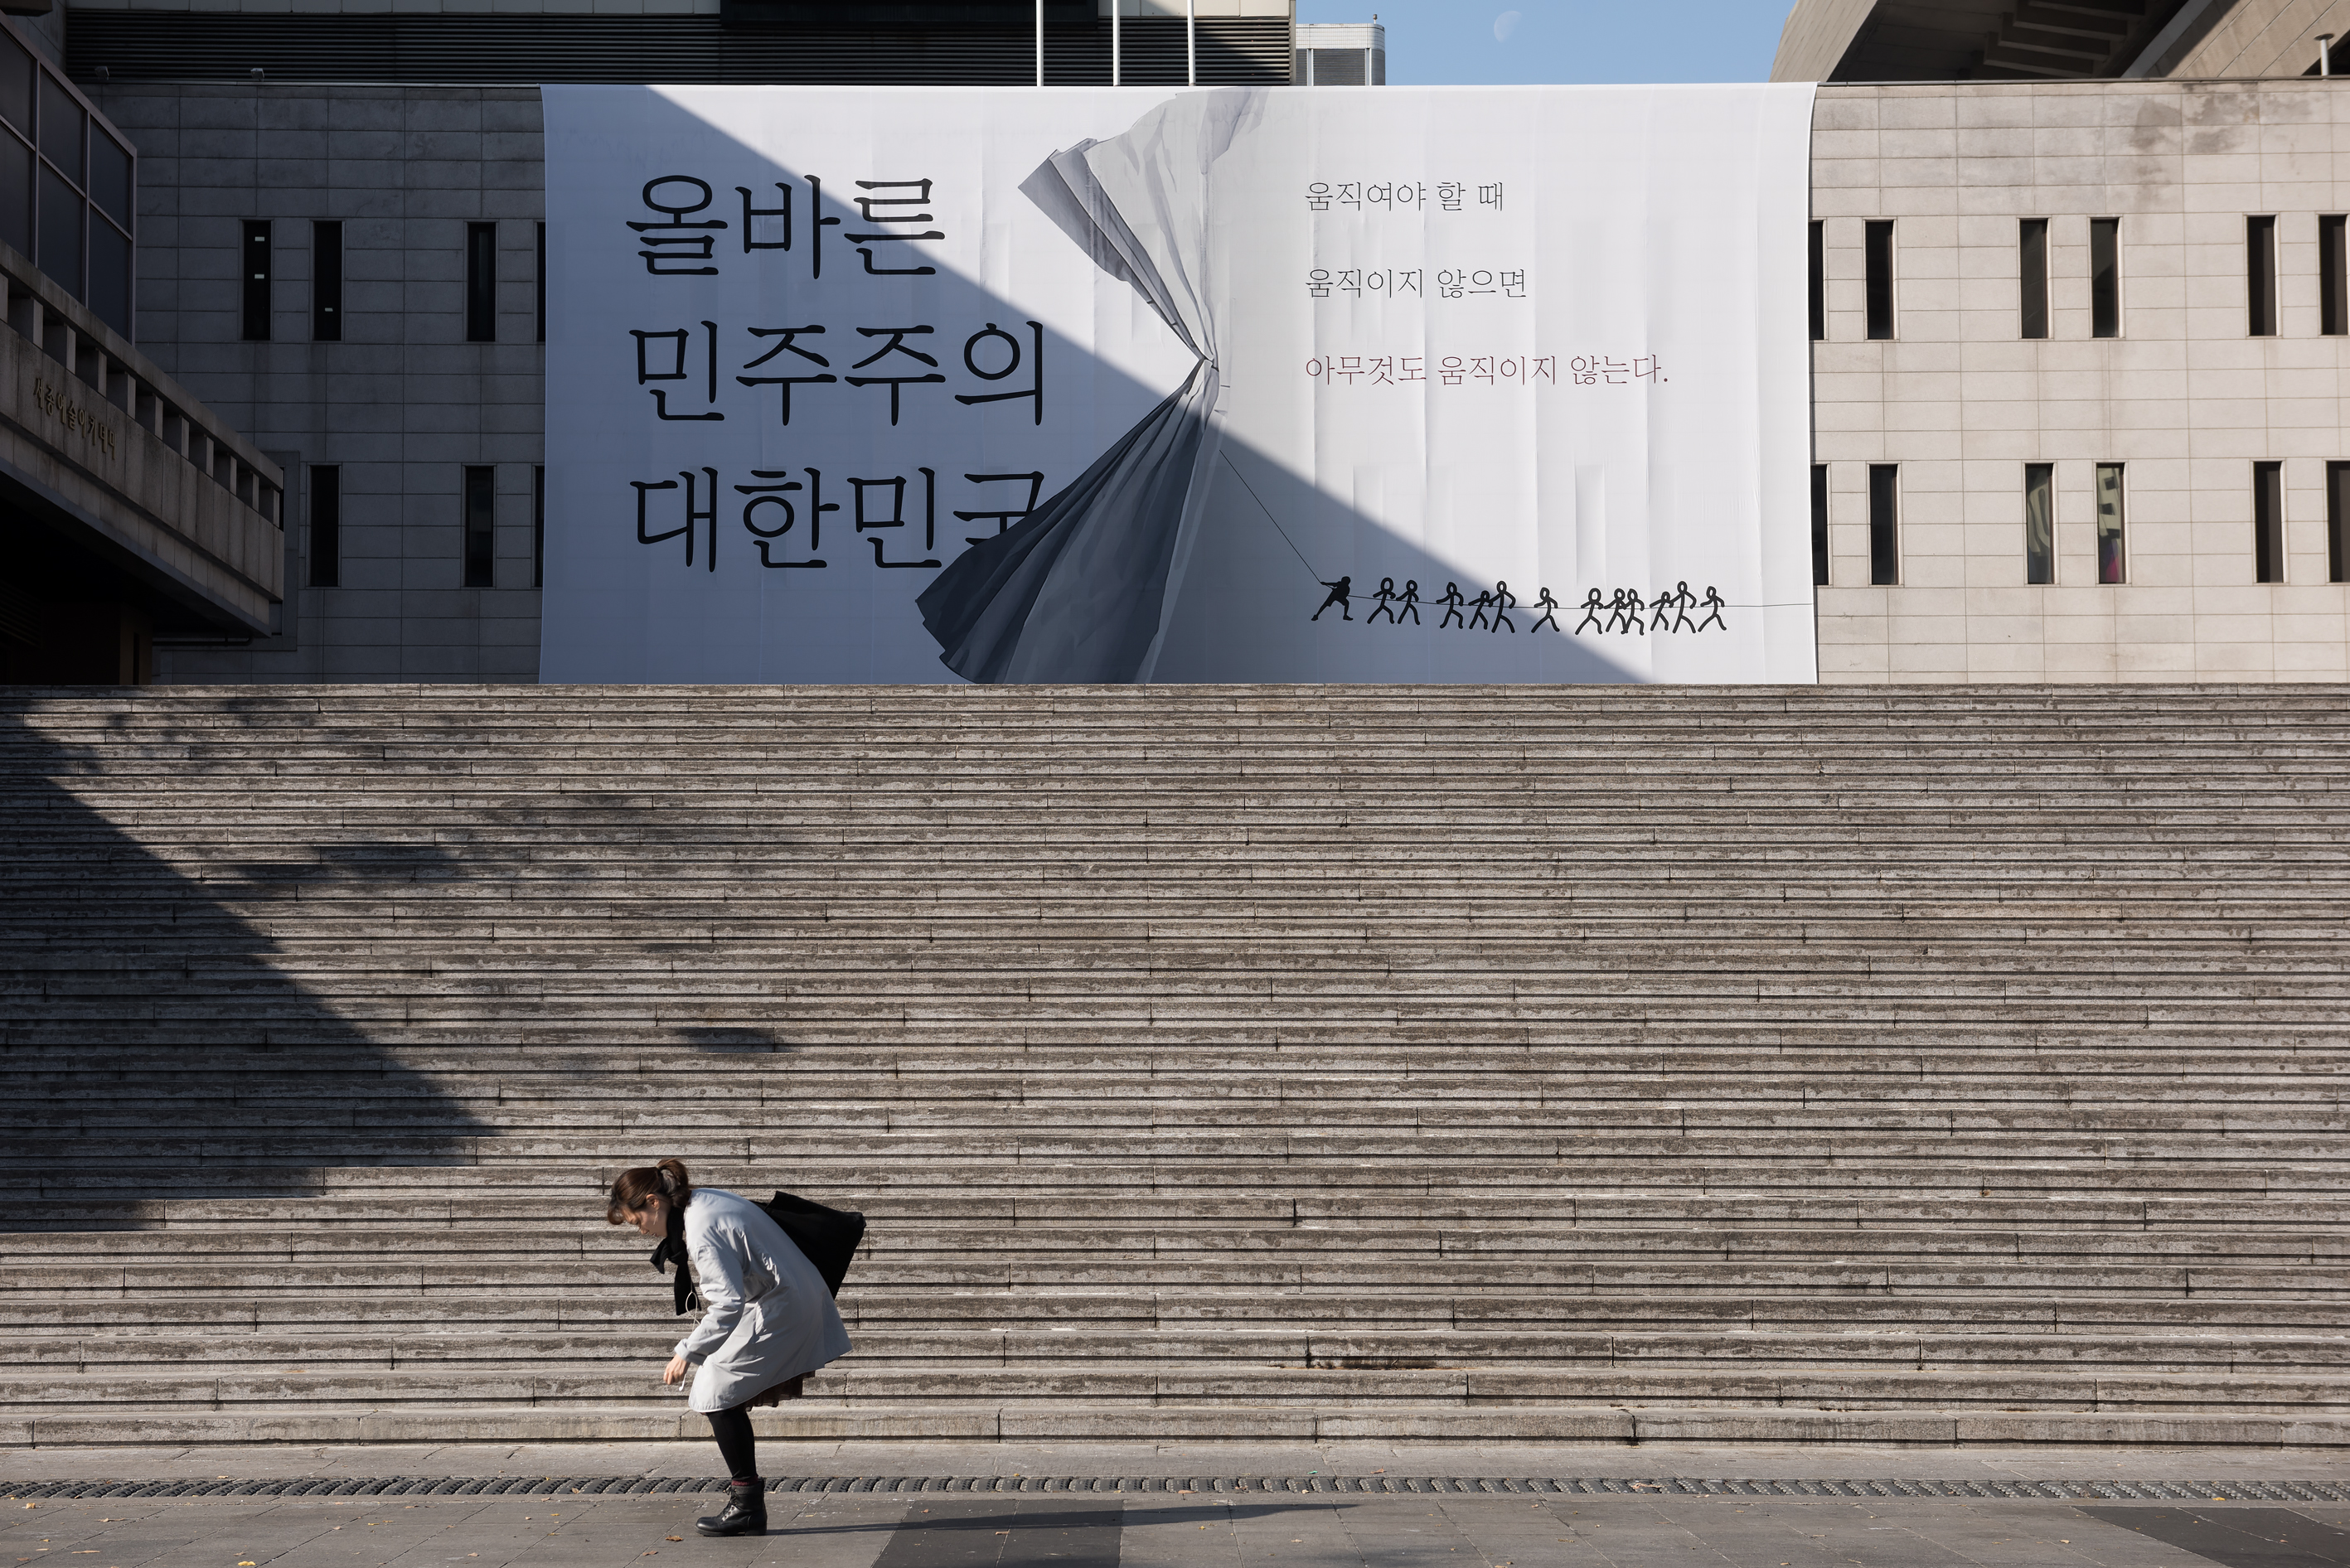 서울 광화문 광장 세종문화회관에 대형 걸개가 걸렸다. 내용은 이렇다. 올바른 민주주의 대한민국.